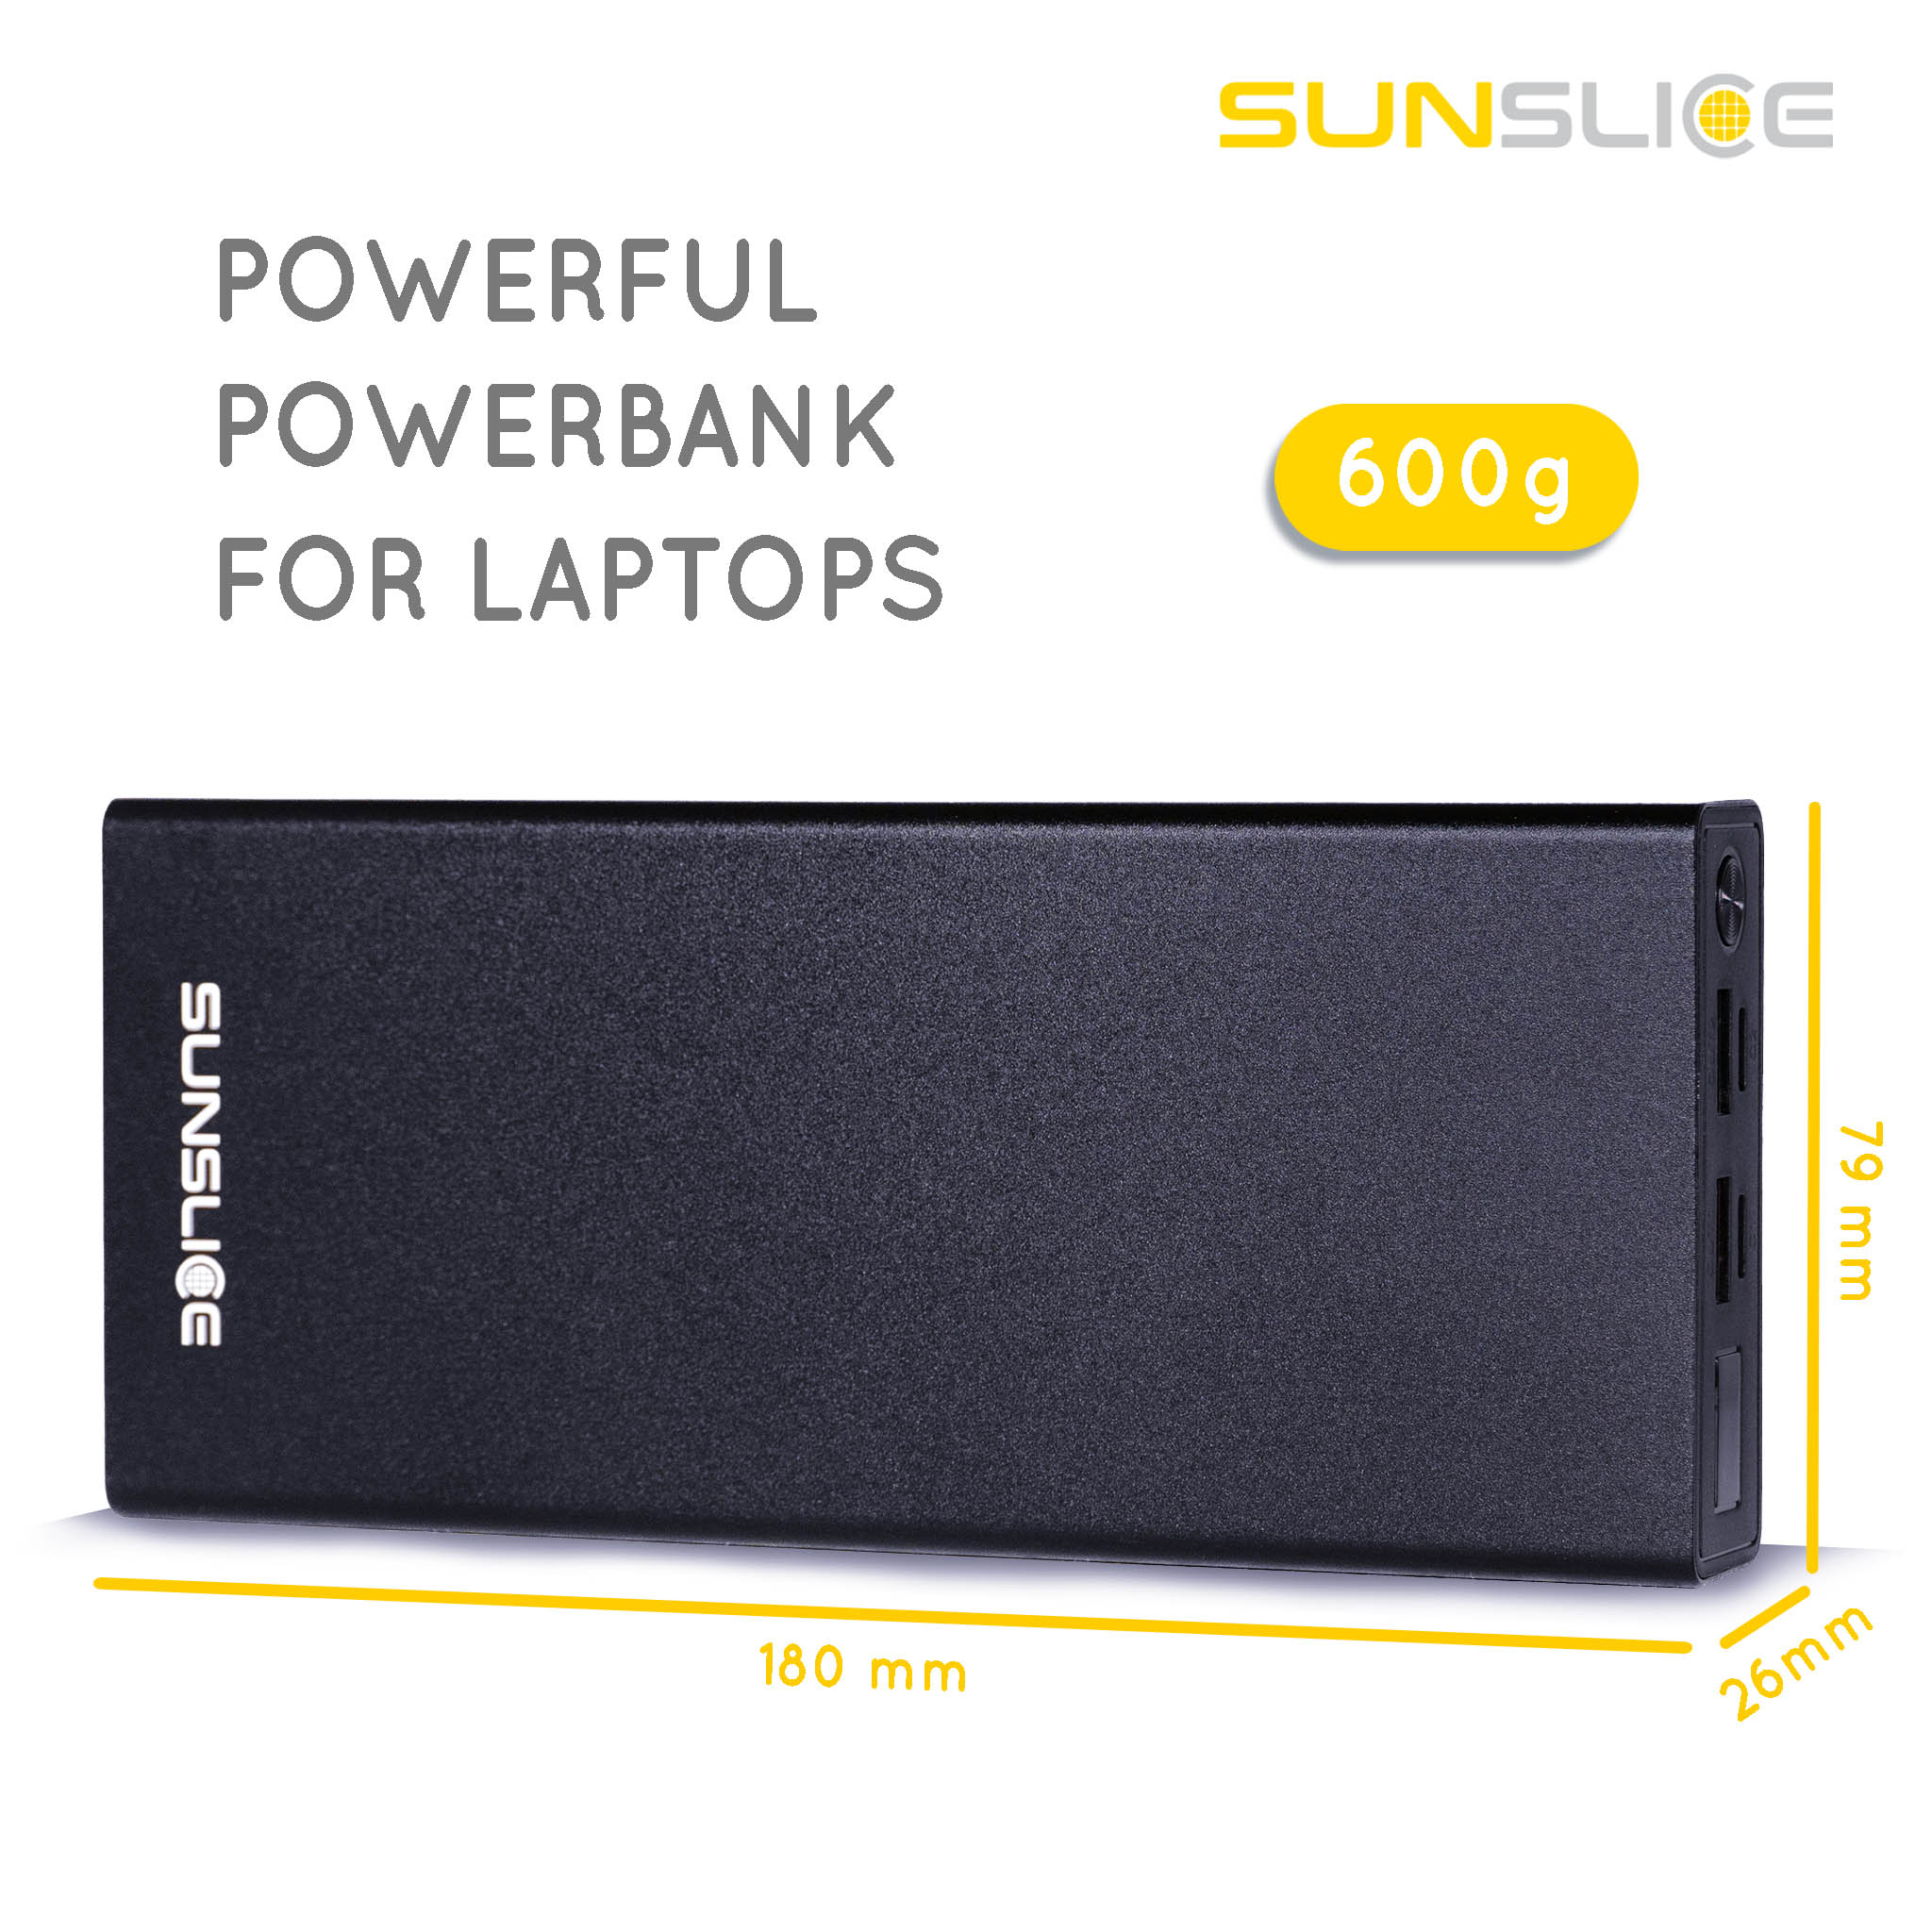 Powerbank Gravity 27 Größenangaben: 180 mm, 79 mm, 26 mm. Gewicht: 600g Leistungsstarke Powerbank für Laptop